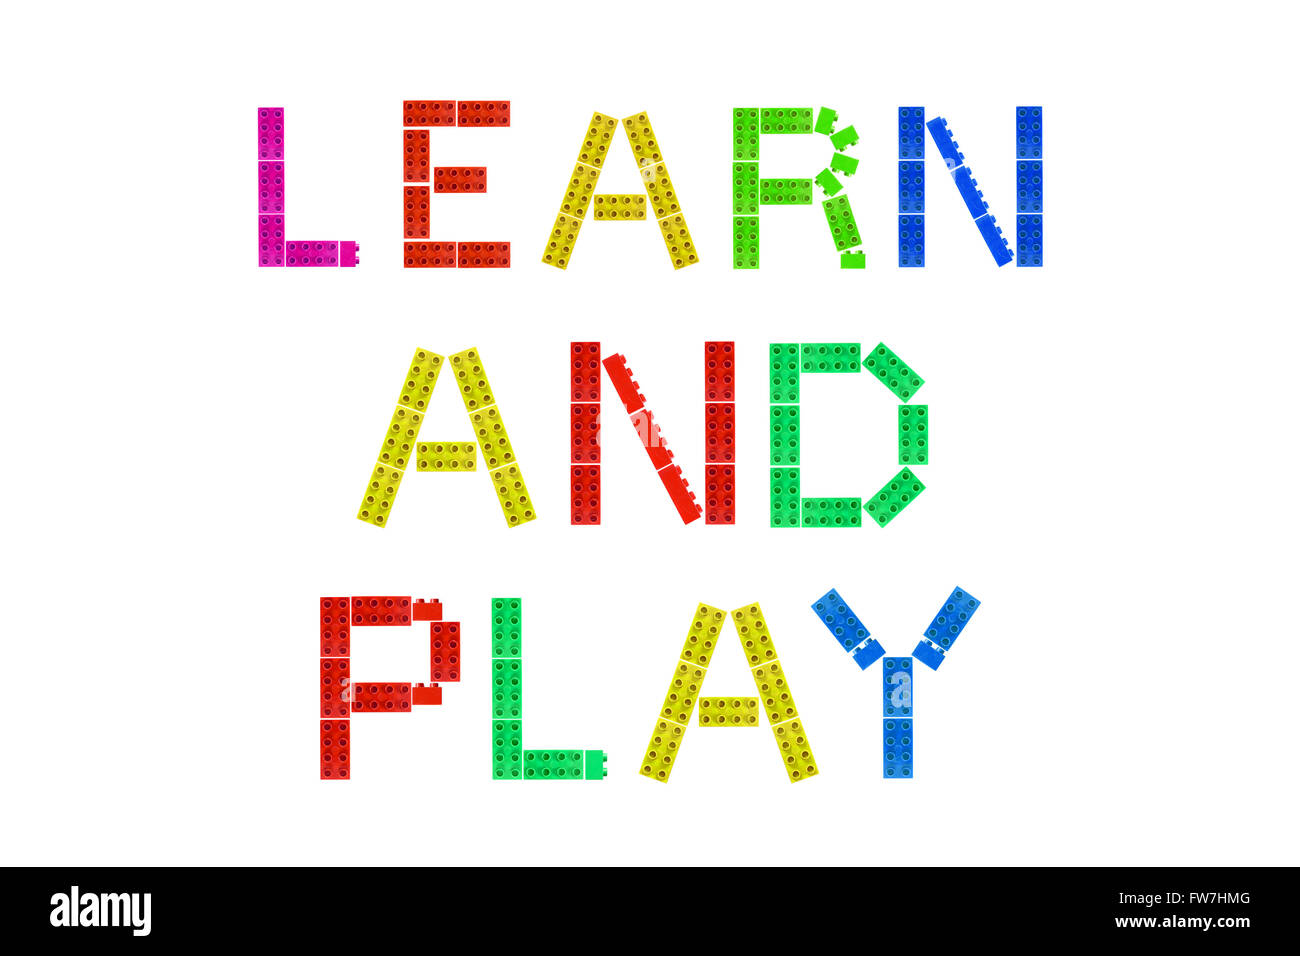 Apprendre et Jouer créé à partir de morceaux de Lego photographié sur un fond blanc. Banque D'Images